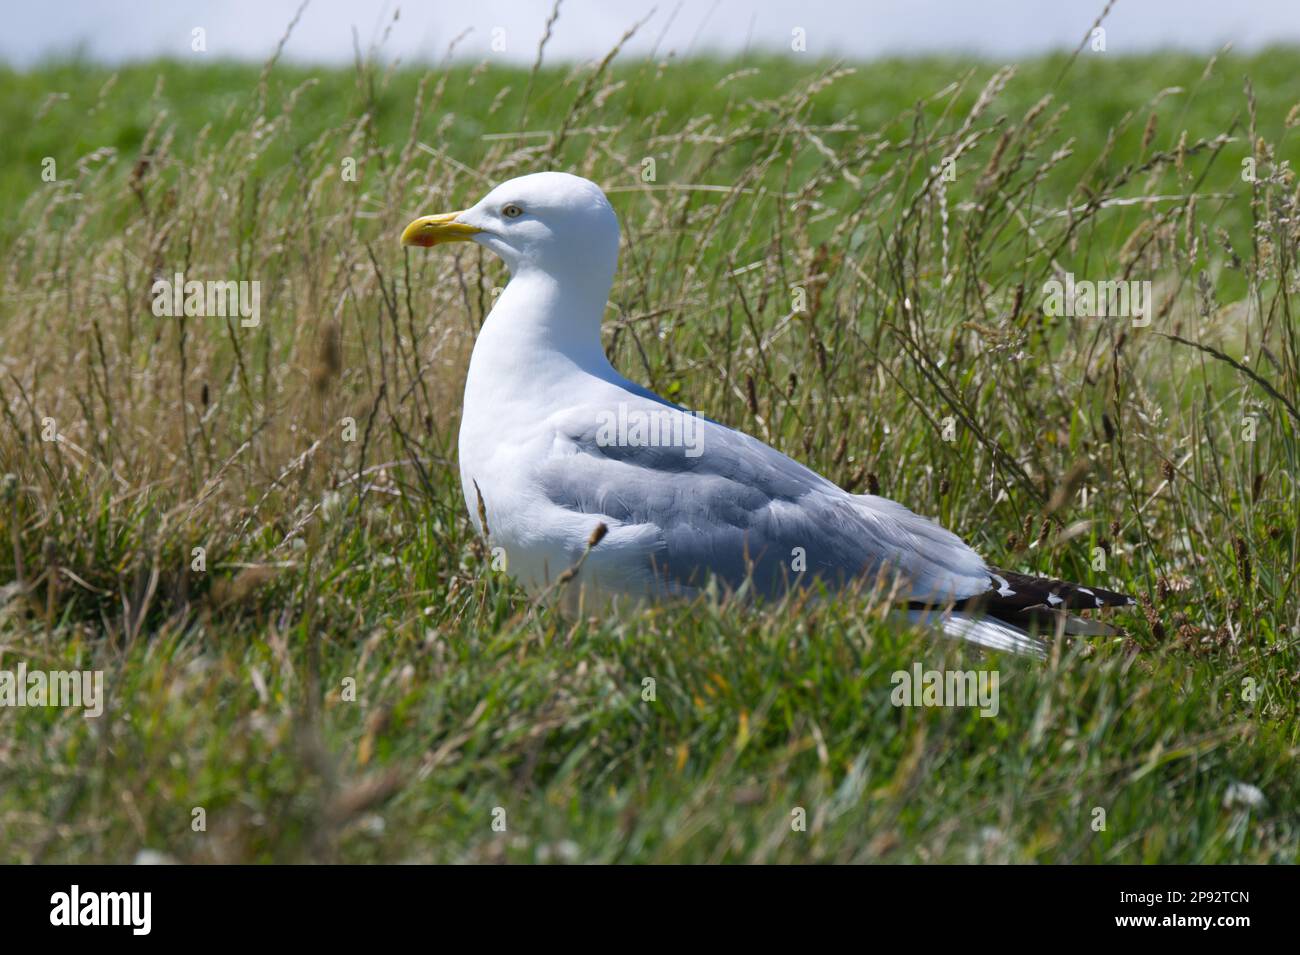 Herring gull in grass Stock Photo